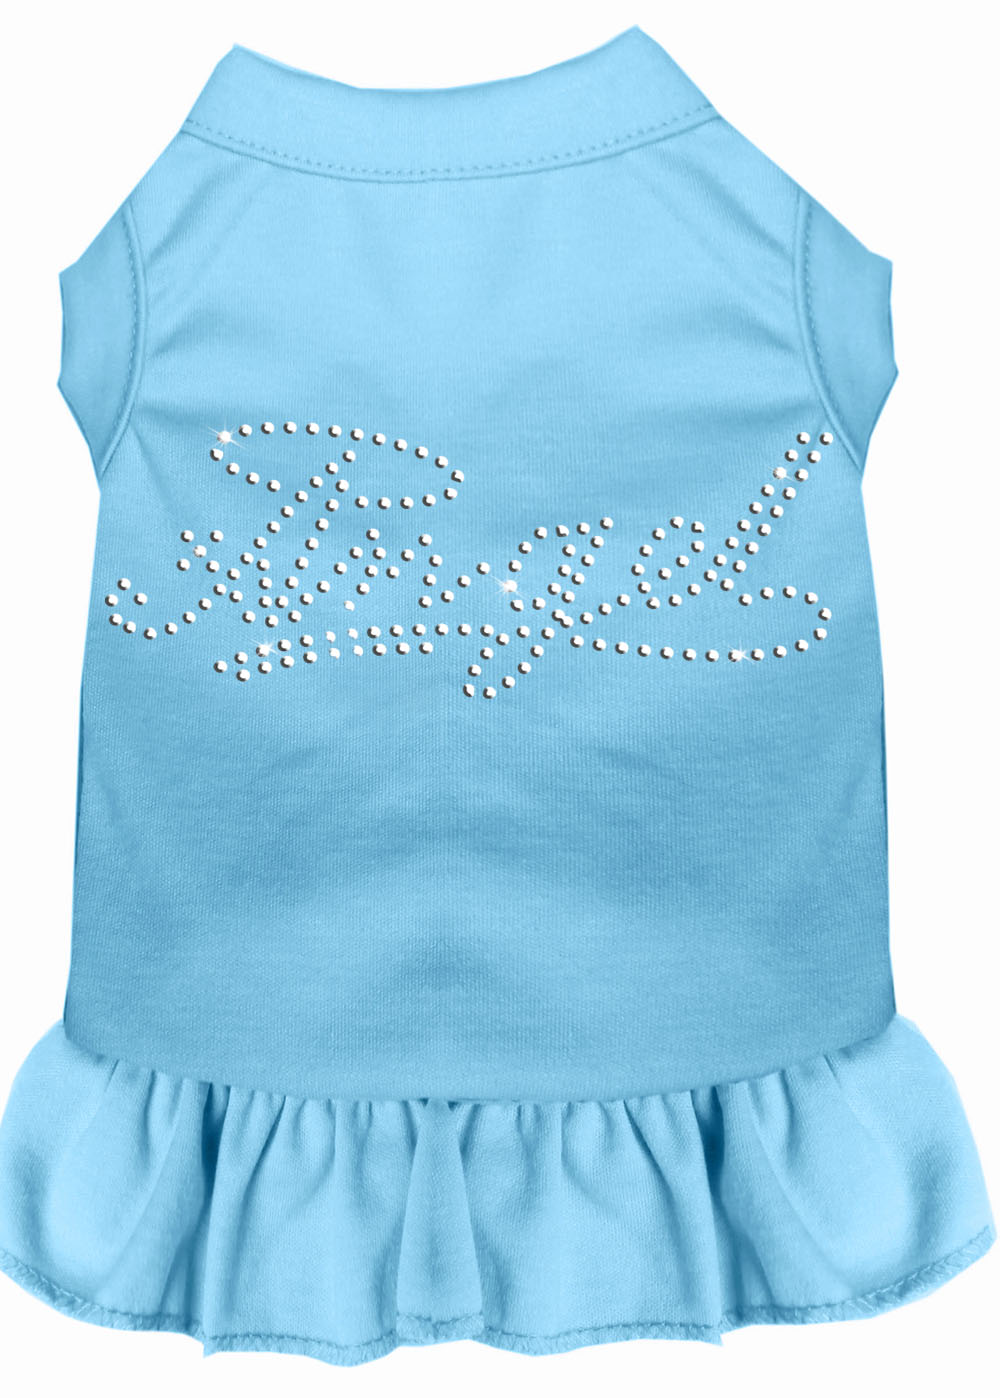 Rhinestone Angel Dress Baby Blue Xl GreatEagleInc